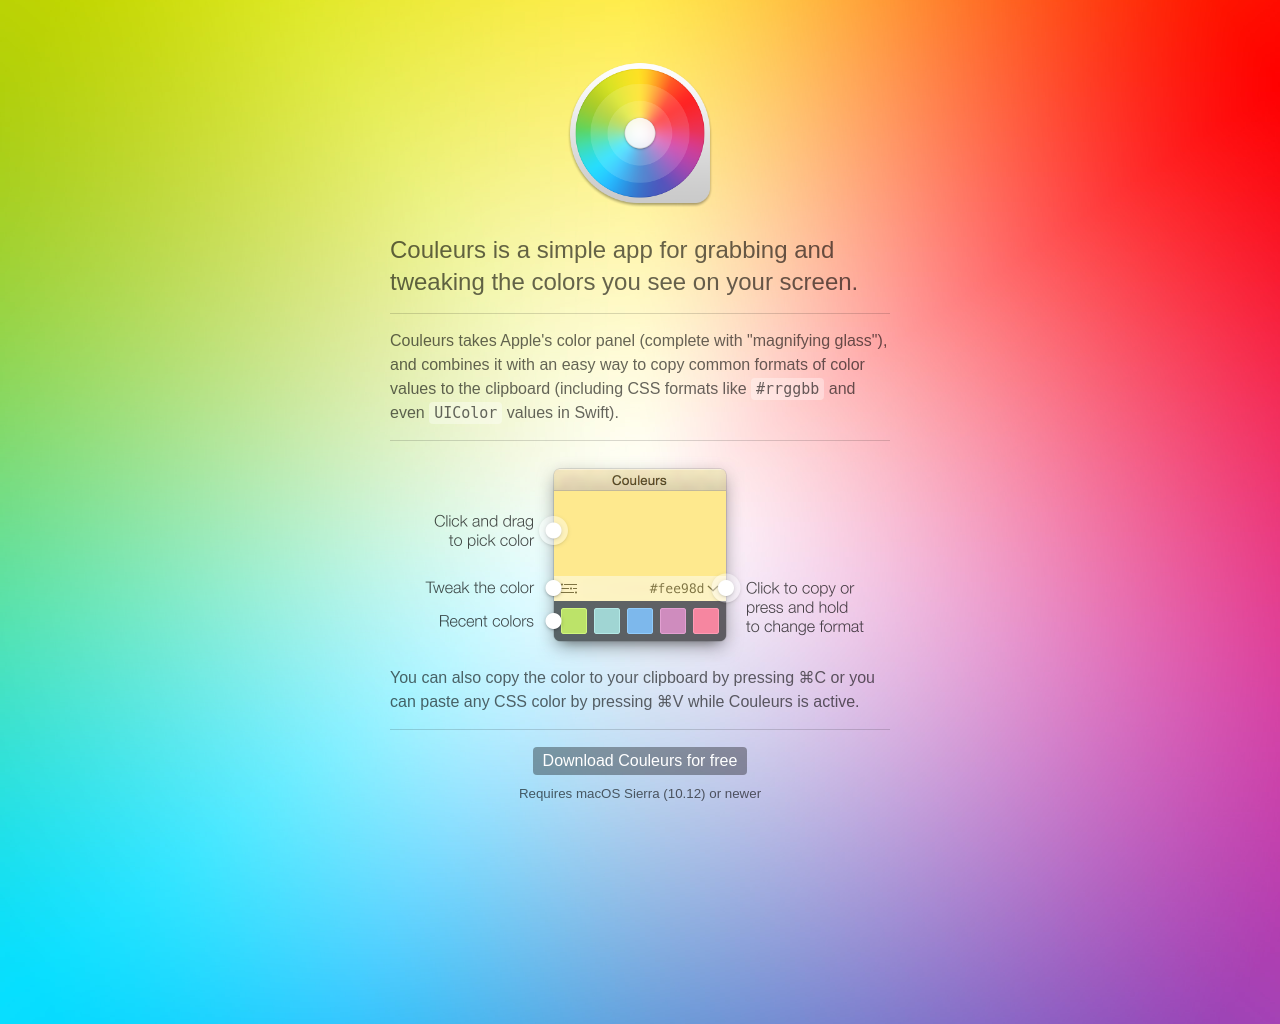 couleursapp.com